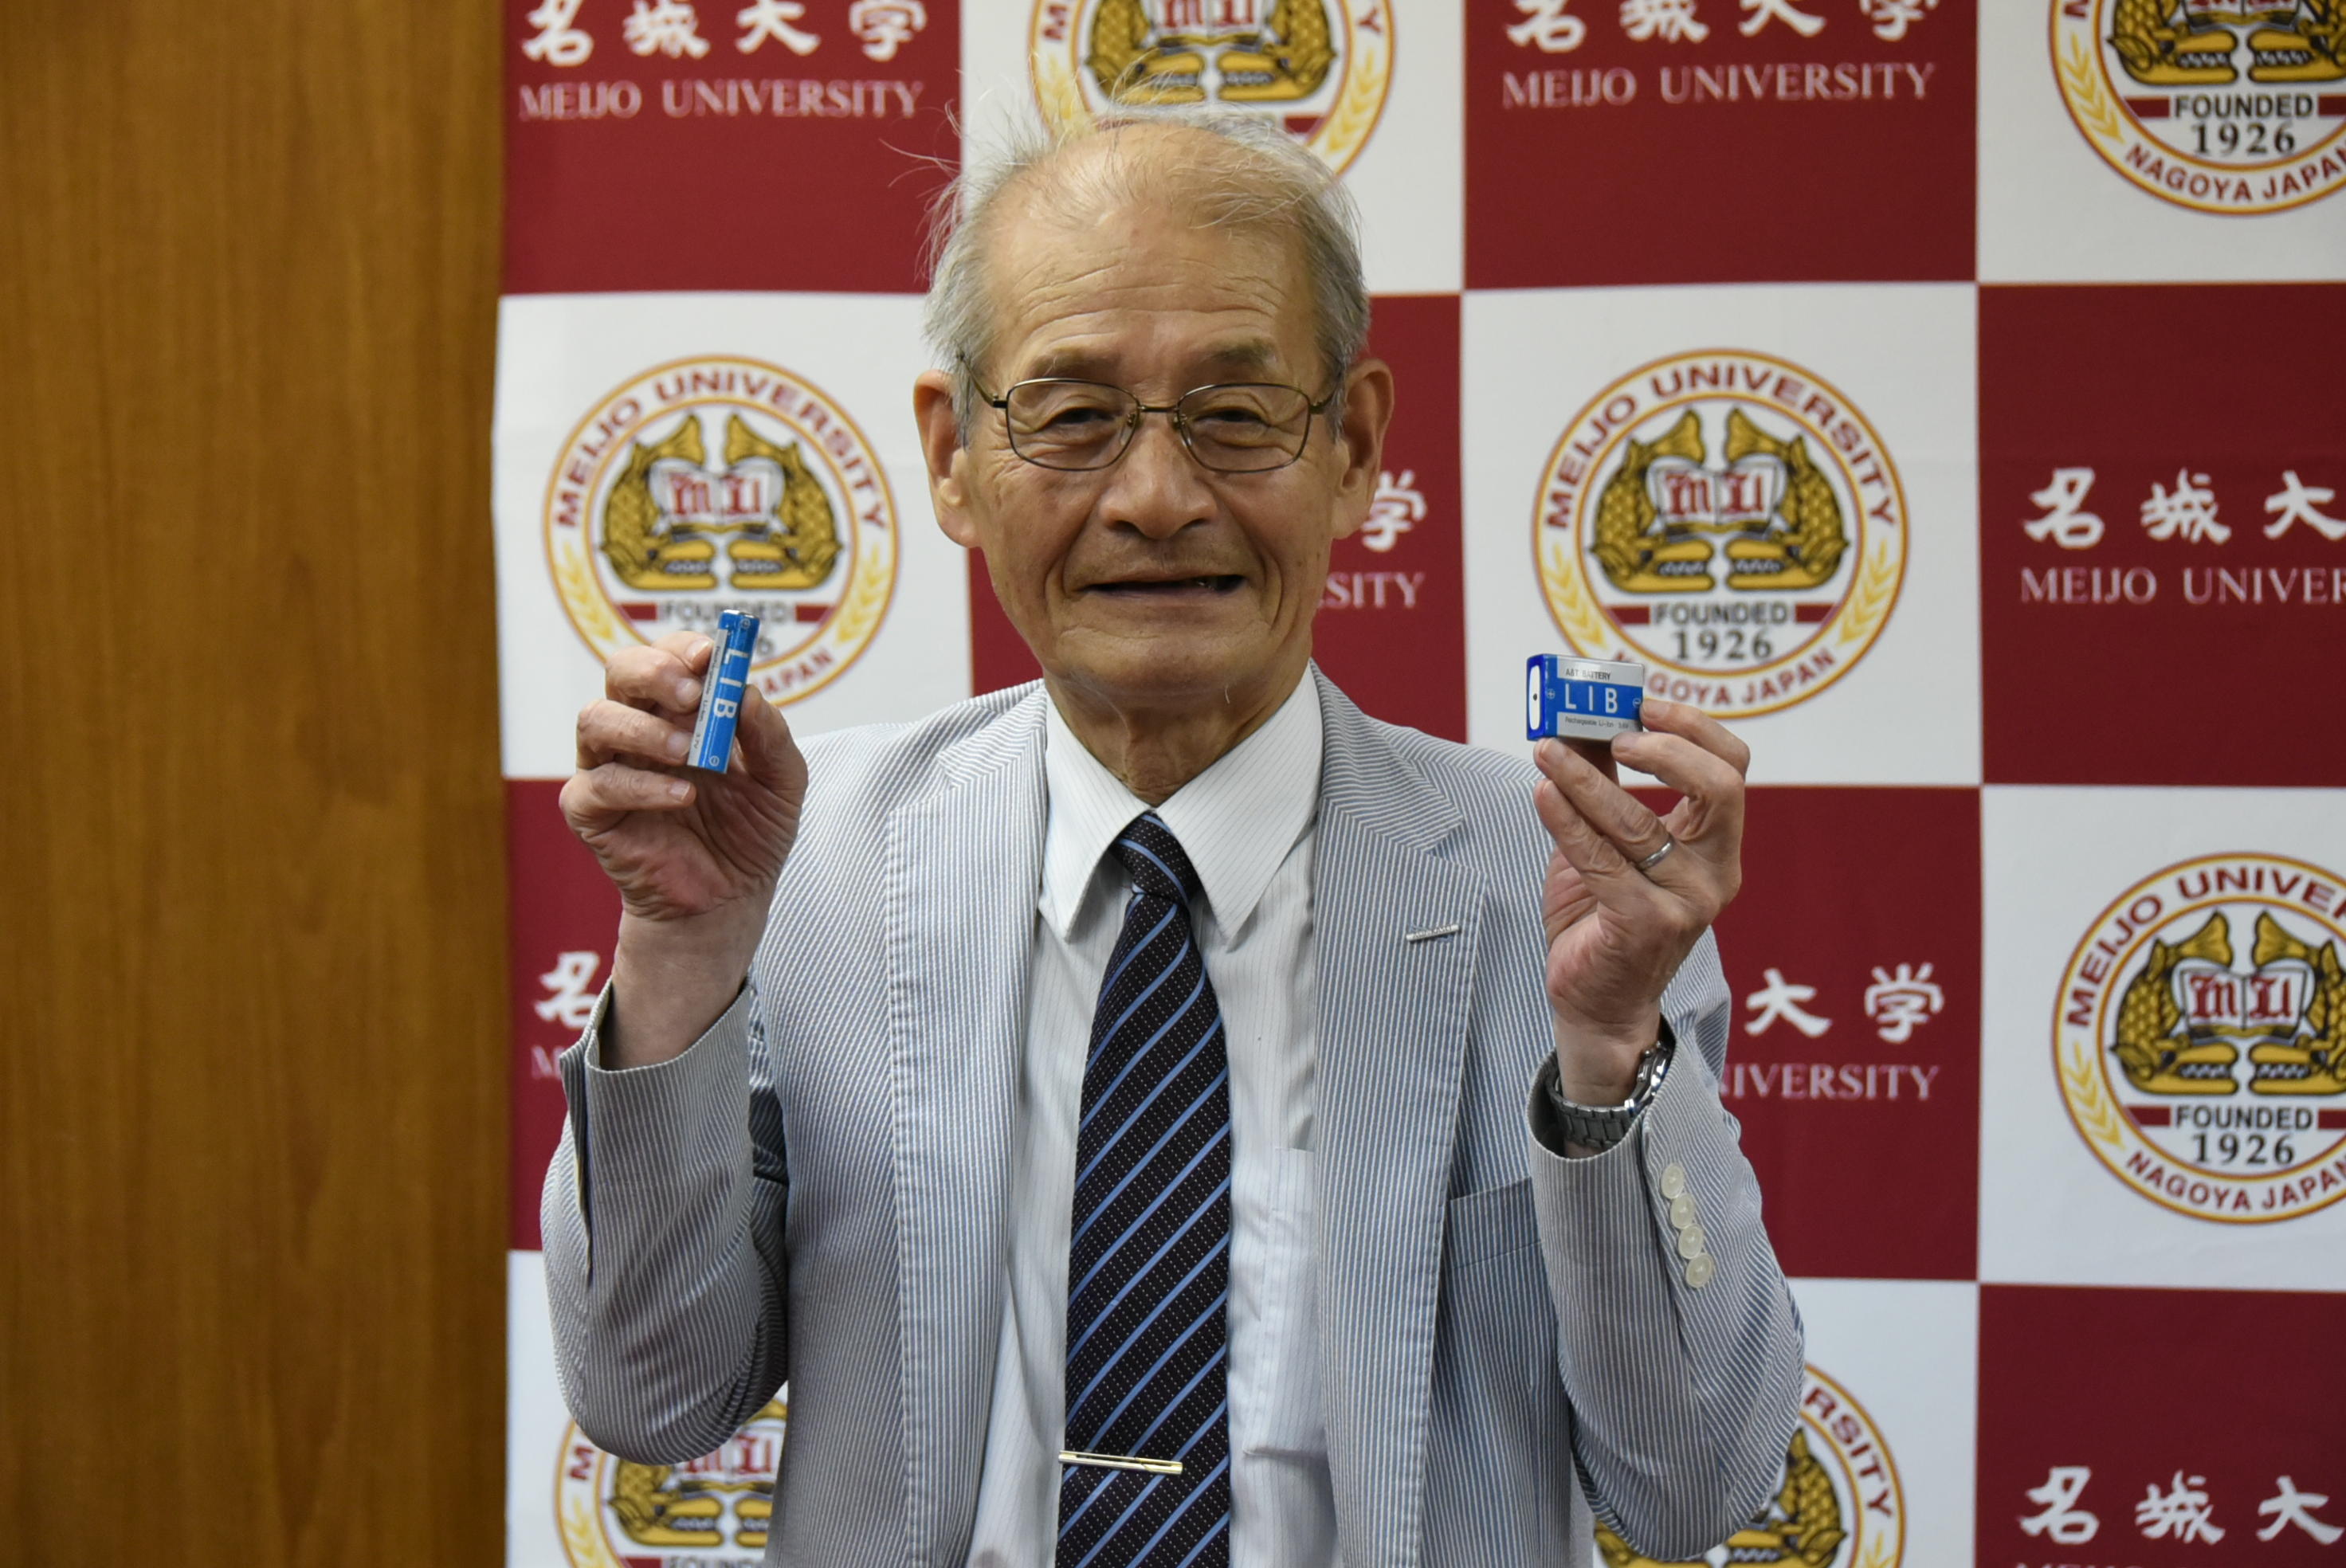 リチウムイオン電池を手にする吉野彰教授